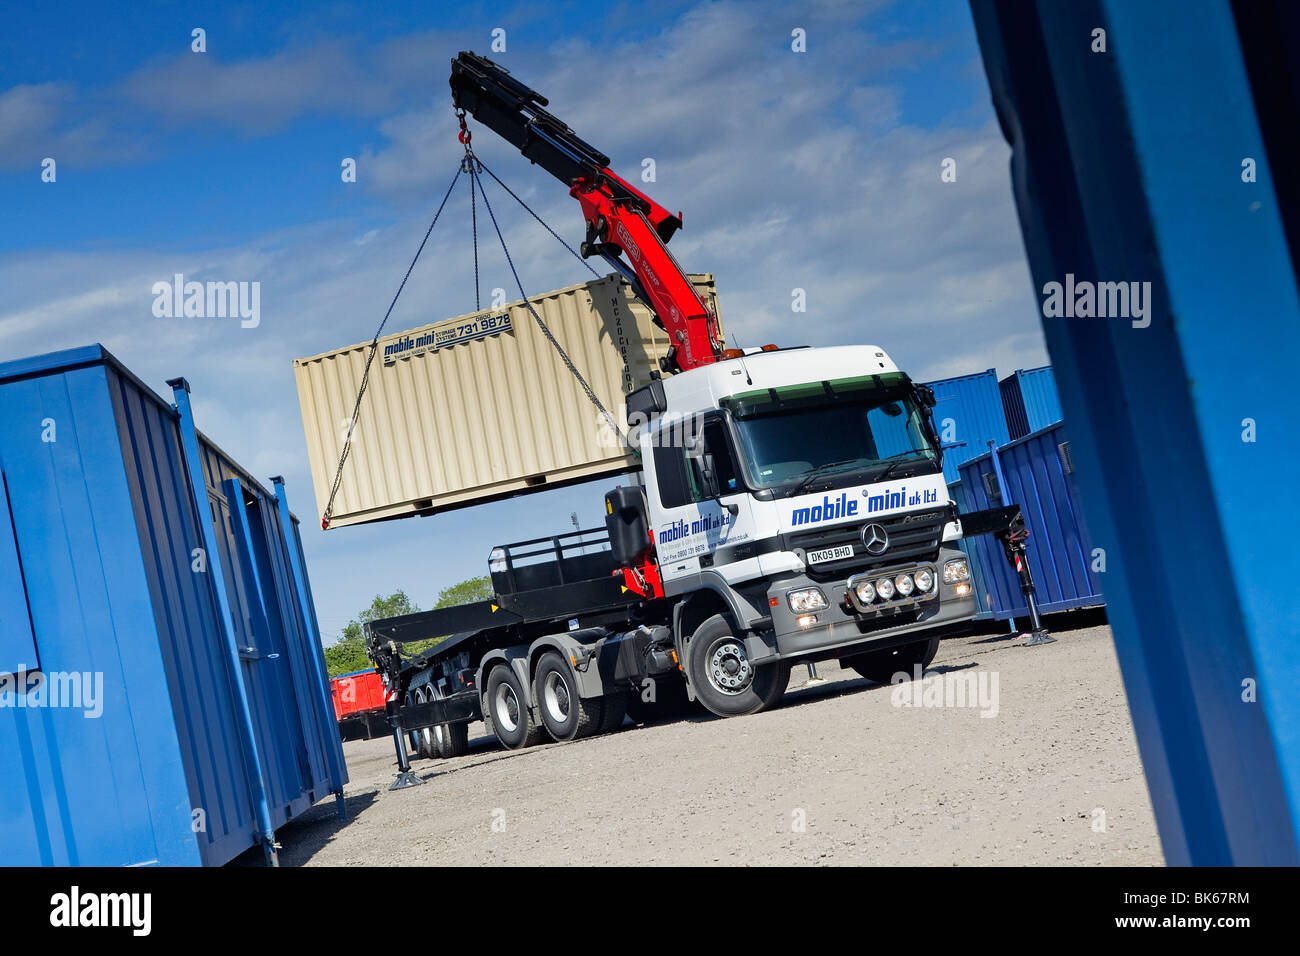 Un camion ou un camion équipé d'une grue qui se lève pour se positionner dans une cour de chantier Banque D'Images